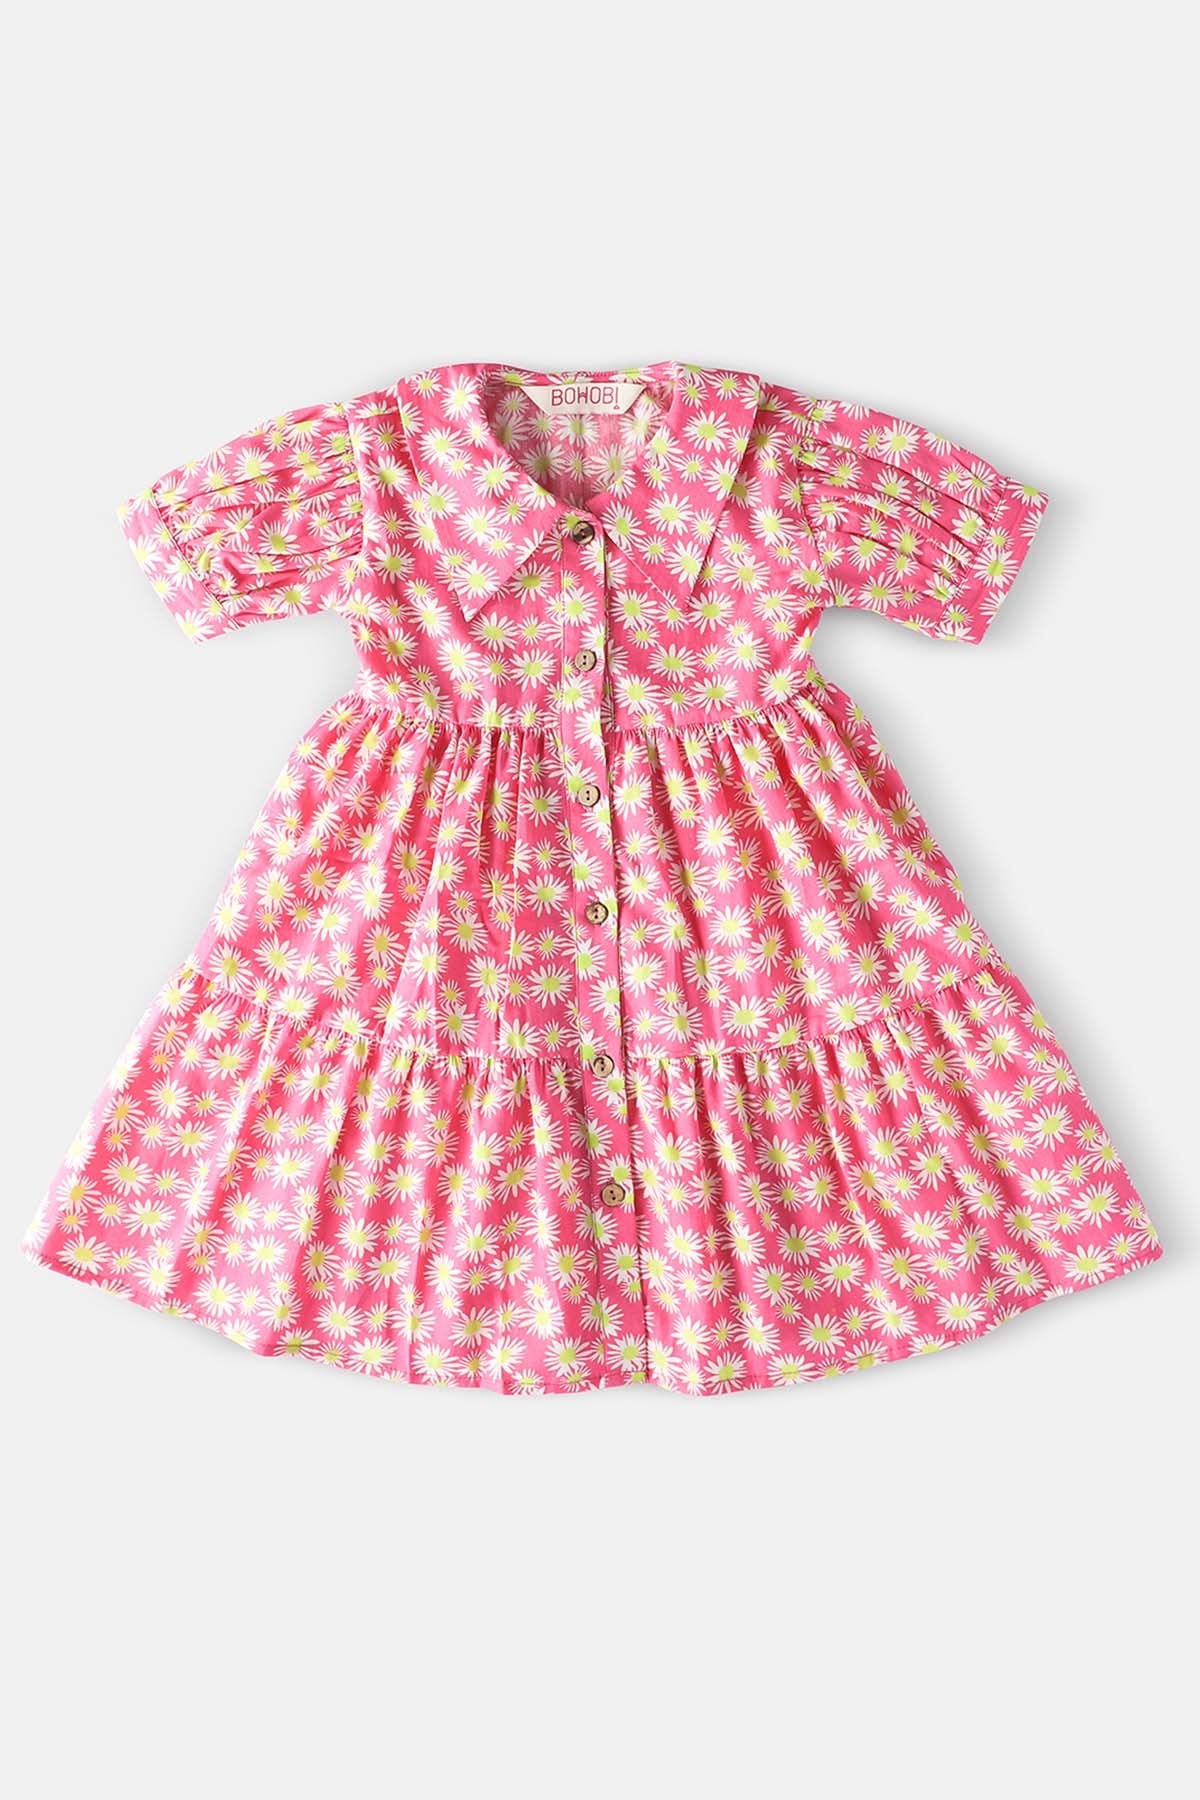 Bohobi Pink Cotton Floral Print Dress for kids online at ScrollnShops